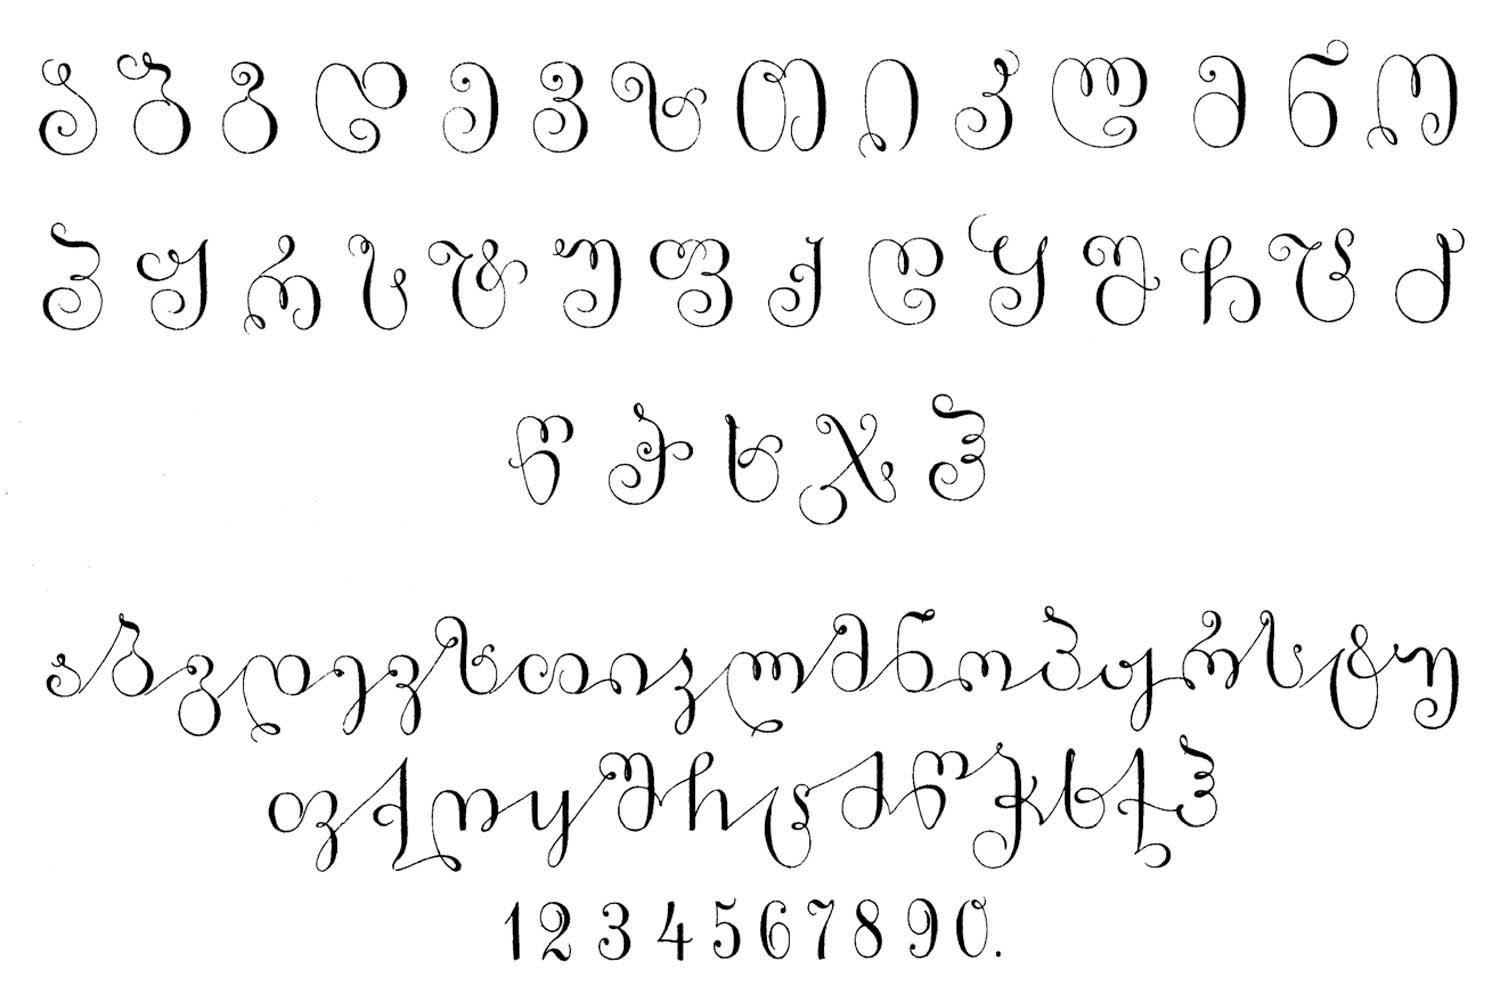 19th century Georgian typefaces